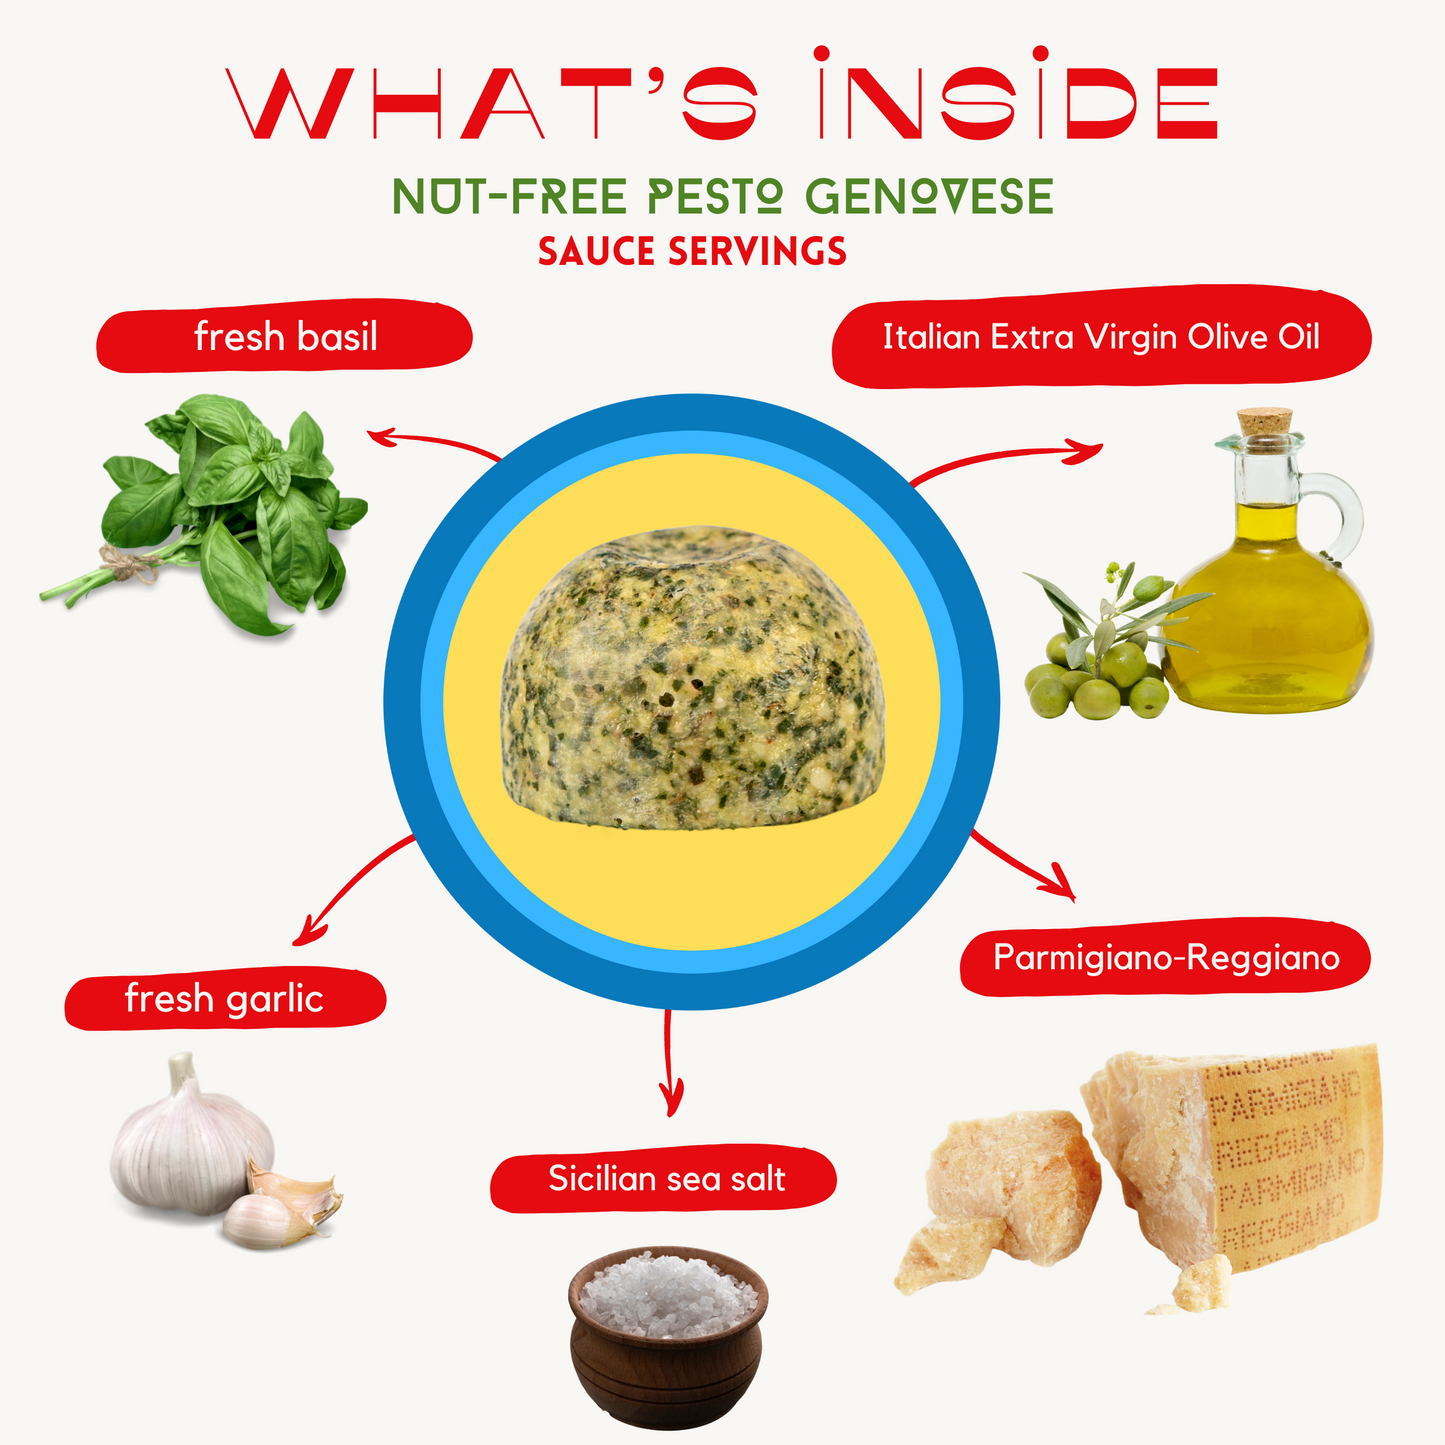 Nut-Free Pesto Genovese Sauce Servings (4-Pack)